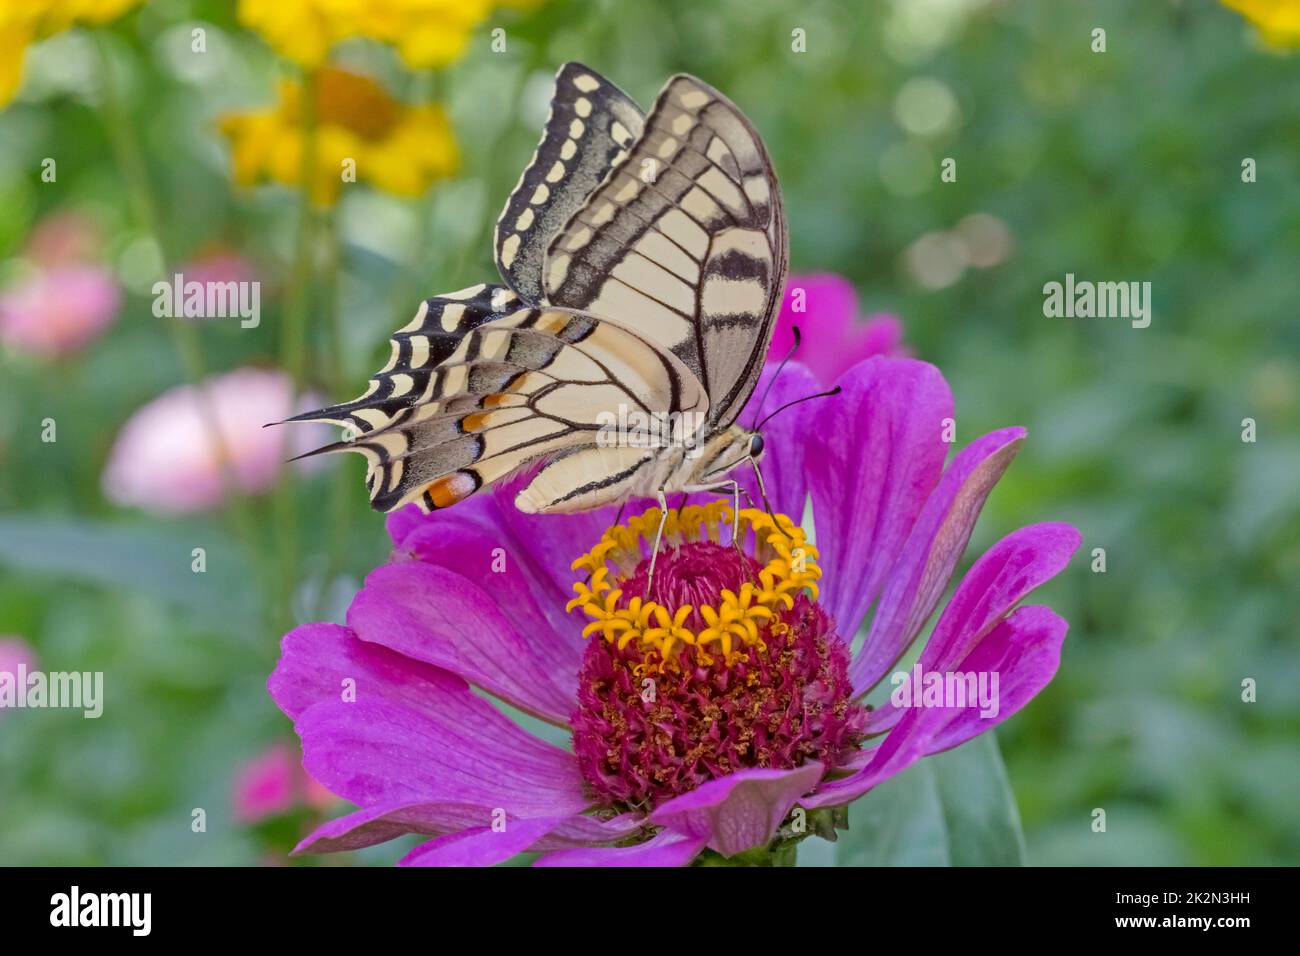 Gros plan du papillon Papilio Machaon assis sur la fleur violette de zinnia dans le jardin Banque D'Images